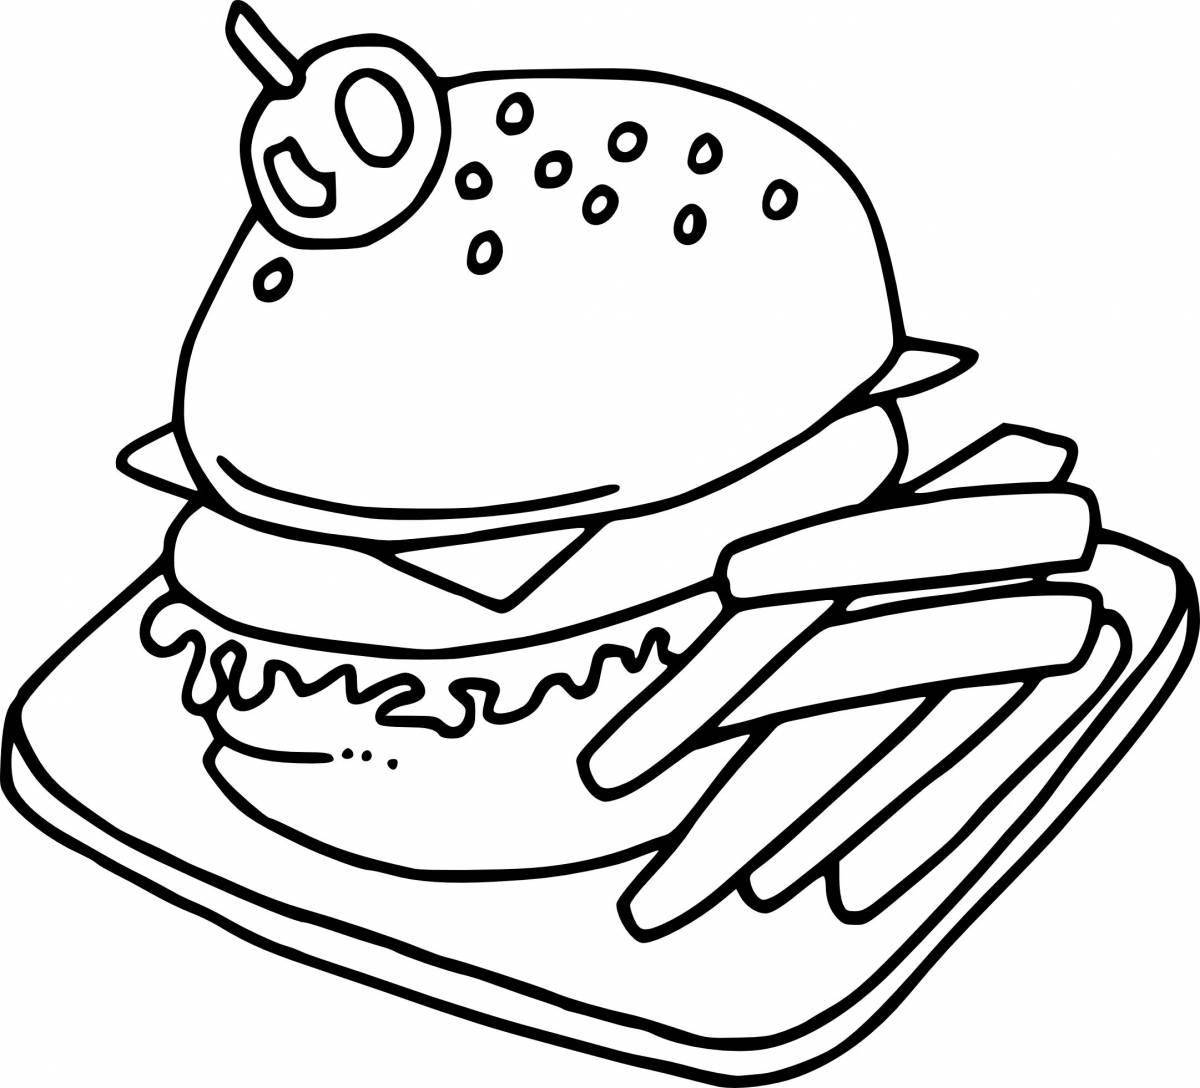 Colourful hamburger coloring page